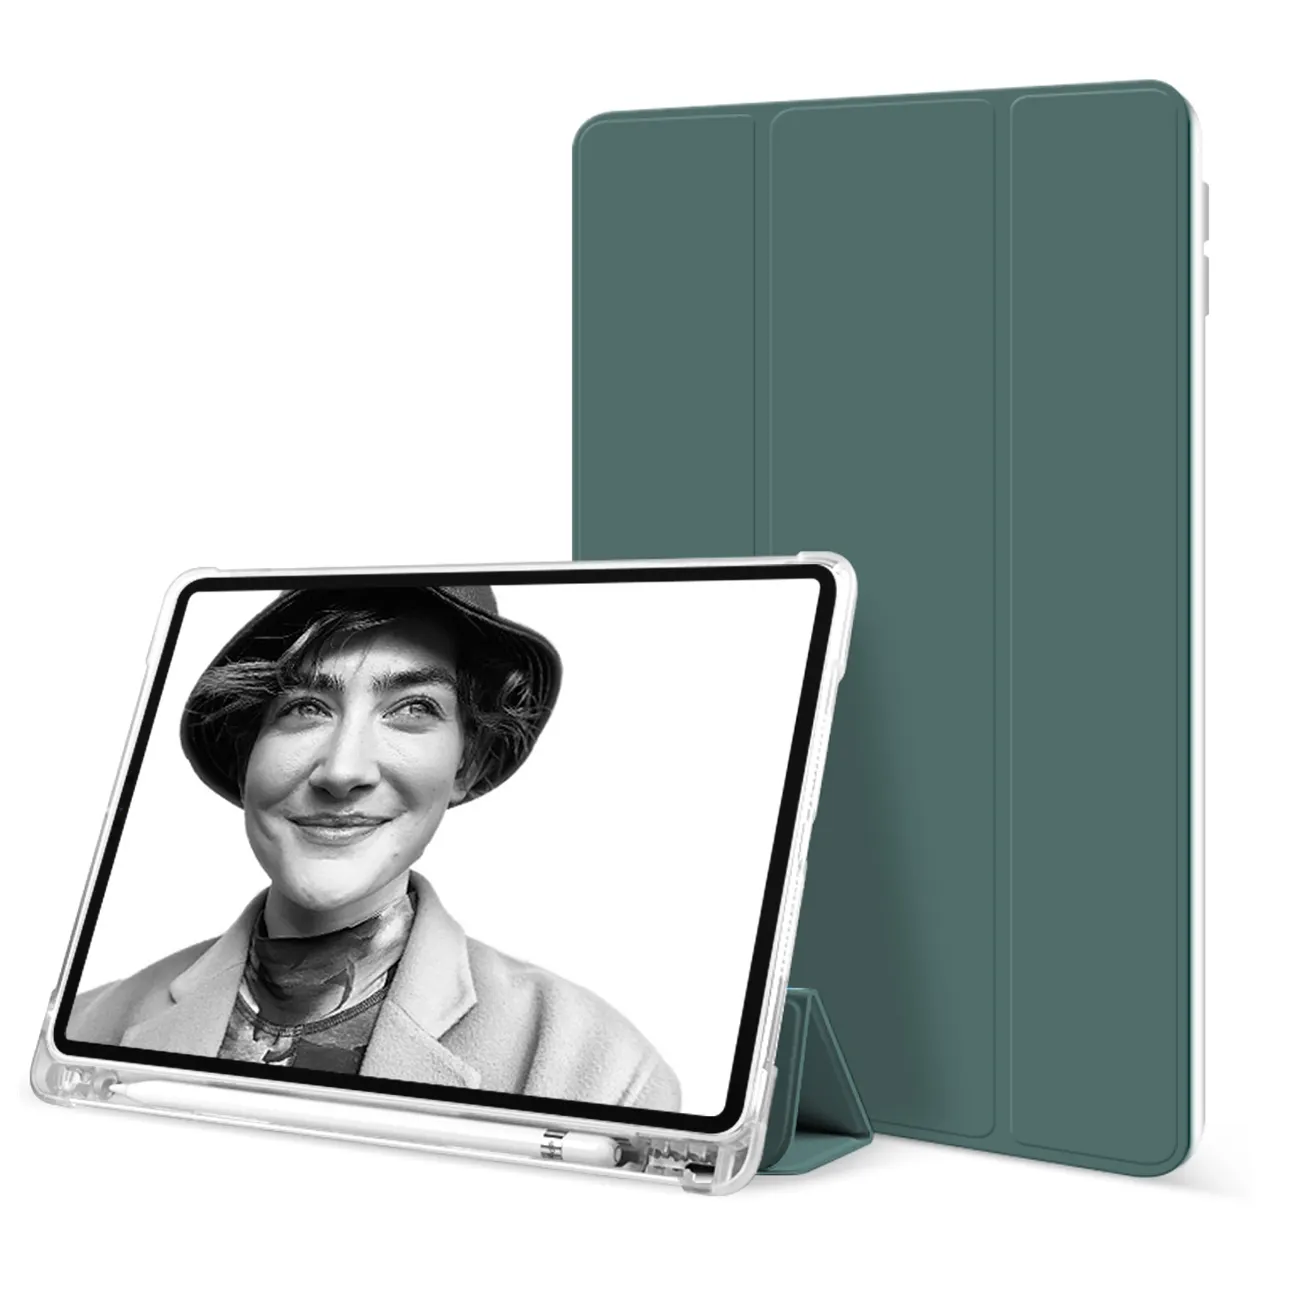 אישית עיצוב tri-לקפל סטנד Tablet Case עבור iPad אוויר 3 10.5 2019 מקרה ipad 8th דור מקרה עם עט בעל